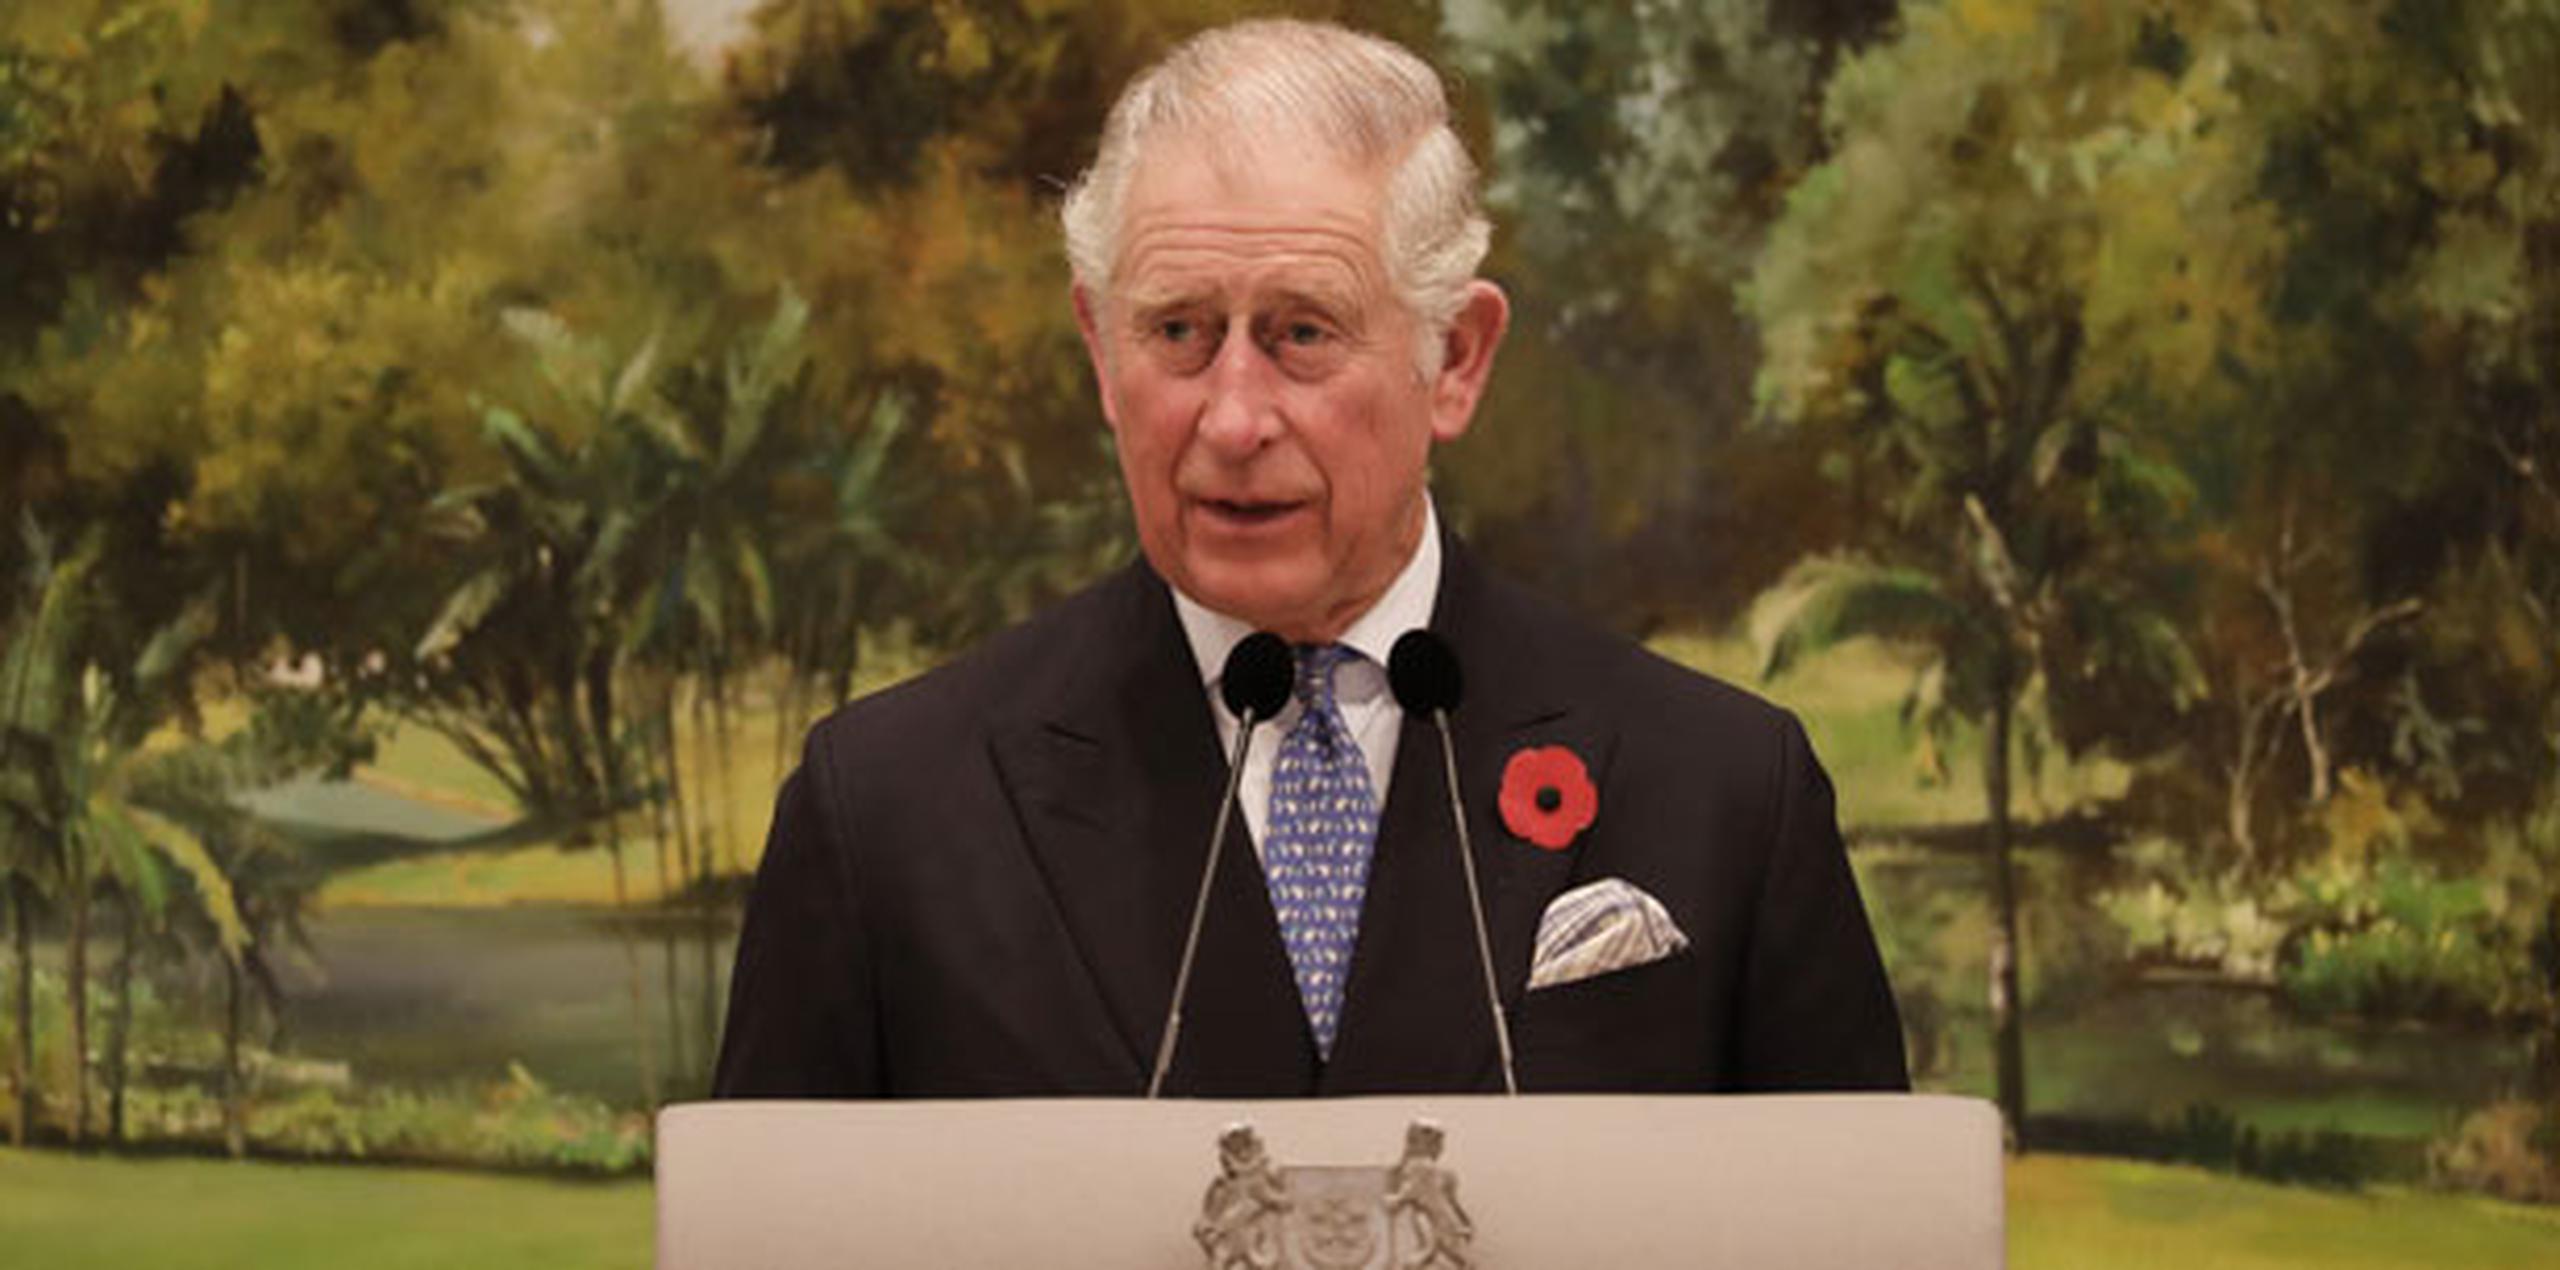 La ceremonia presidida por el príncipe Carlos es vista como un paso más en la transición que se produce en el seno de la monarquía británica debido a la avanzada edad de Isabel II. (Archivo)